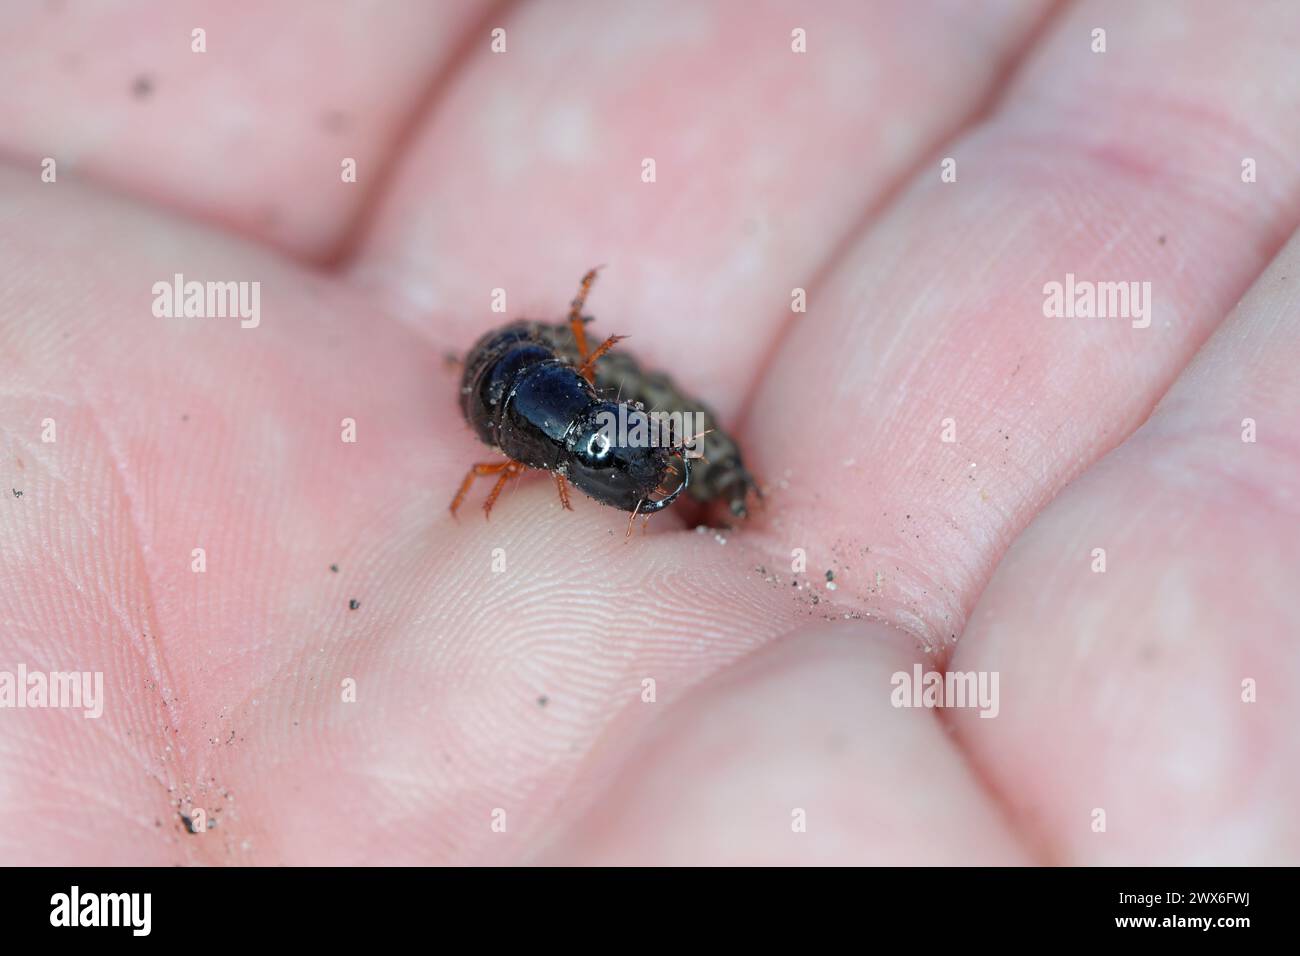 Larve d'un coléoptère prédateur de la famille des coléoptères (Staphylinidae) sur la main. Banque D'Images